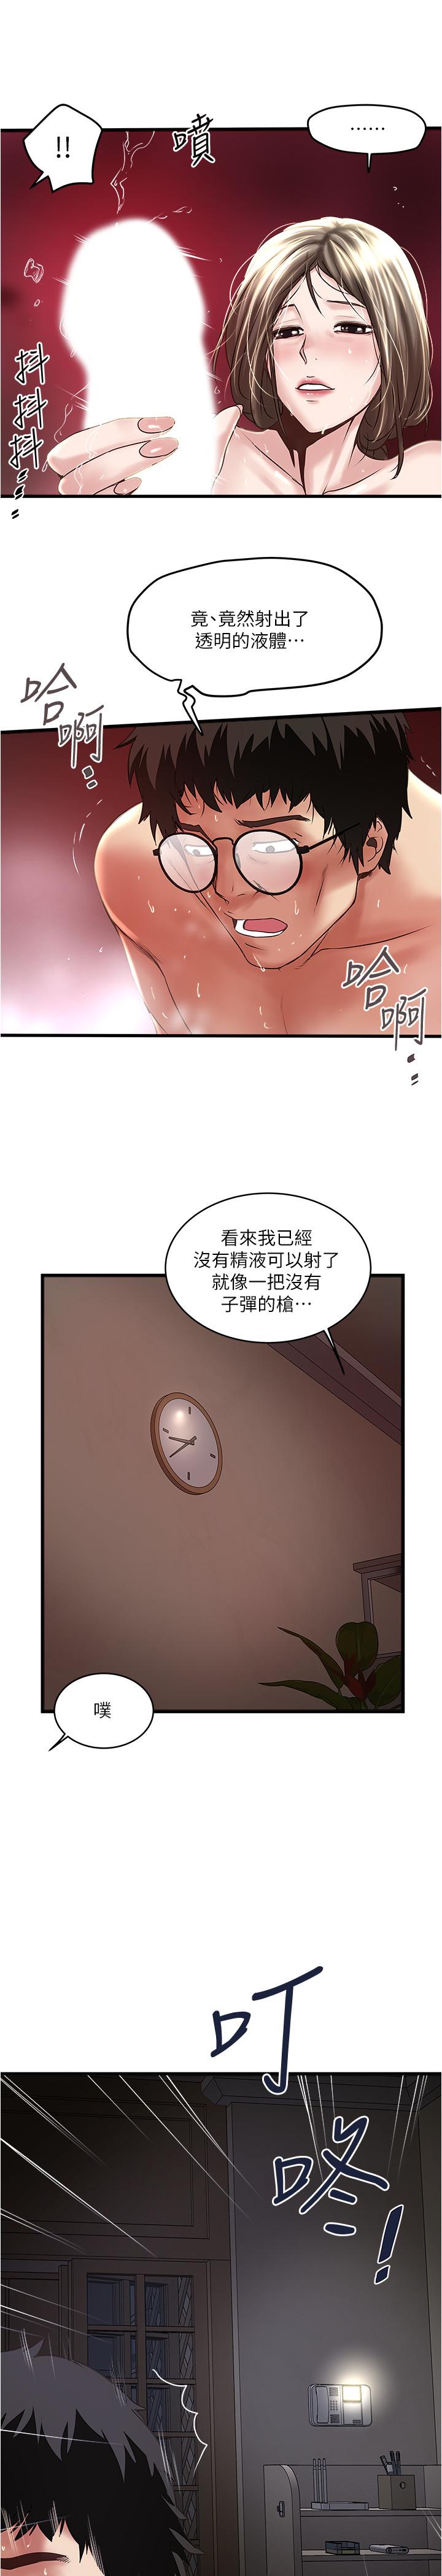 韩国污漫画 下女,初希 第70话-像是大扫除般的淫乱吸允 20